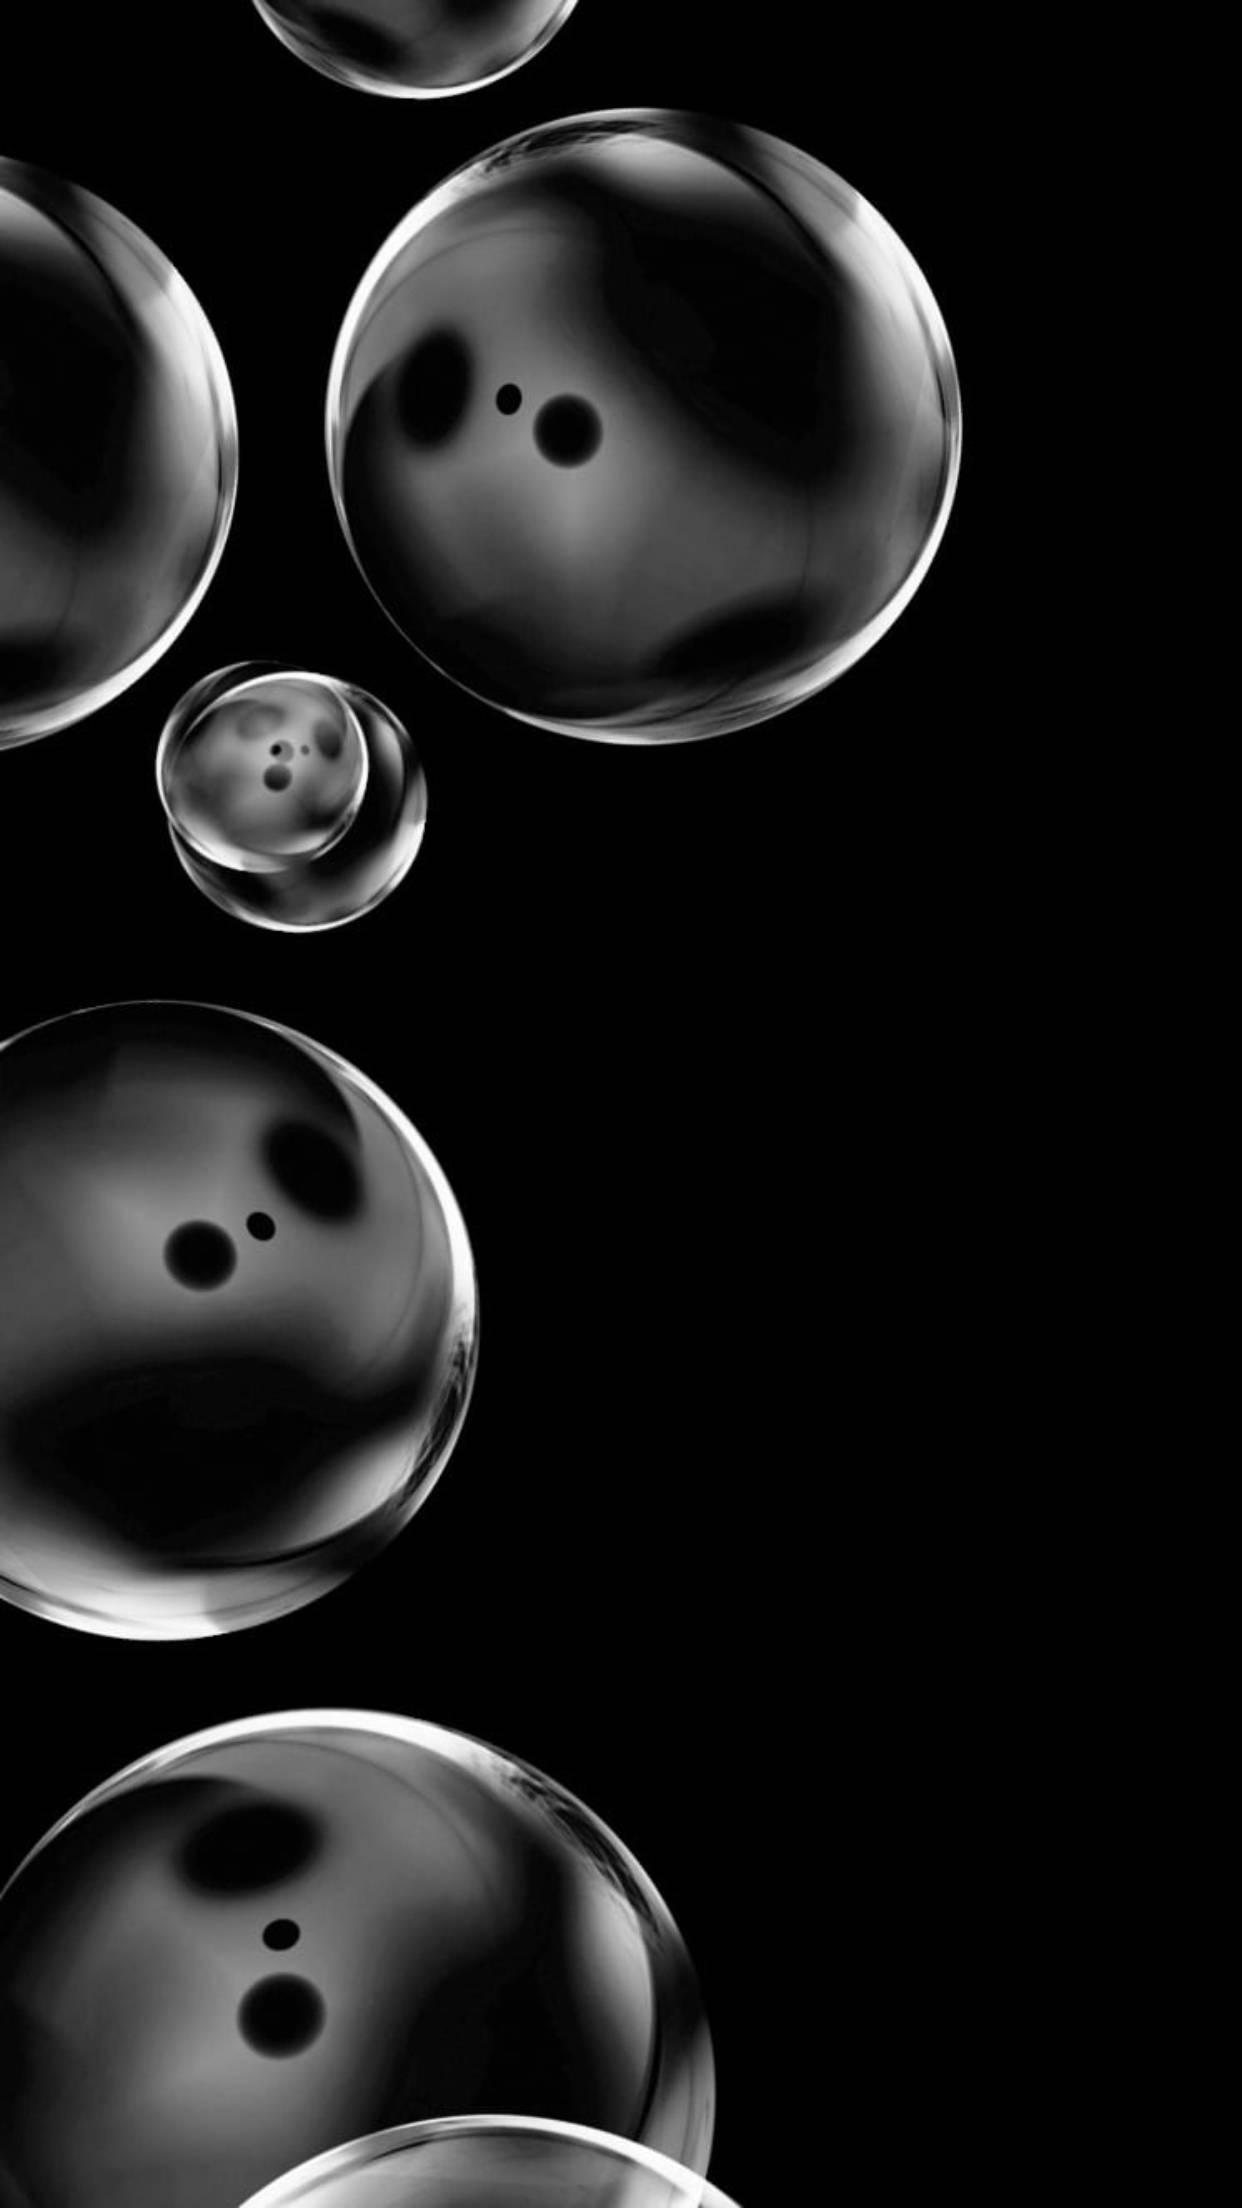 Bubbles On Black Iphone 6 Plus Wallpaper